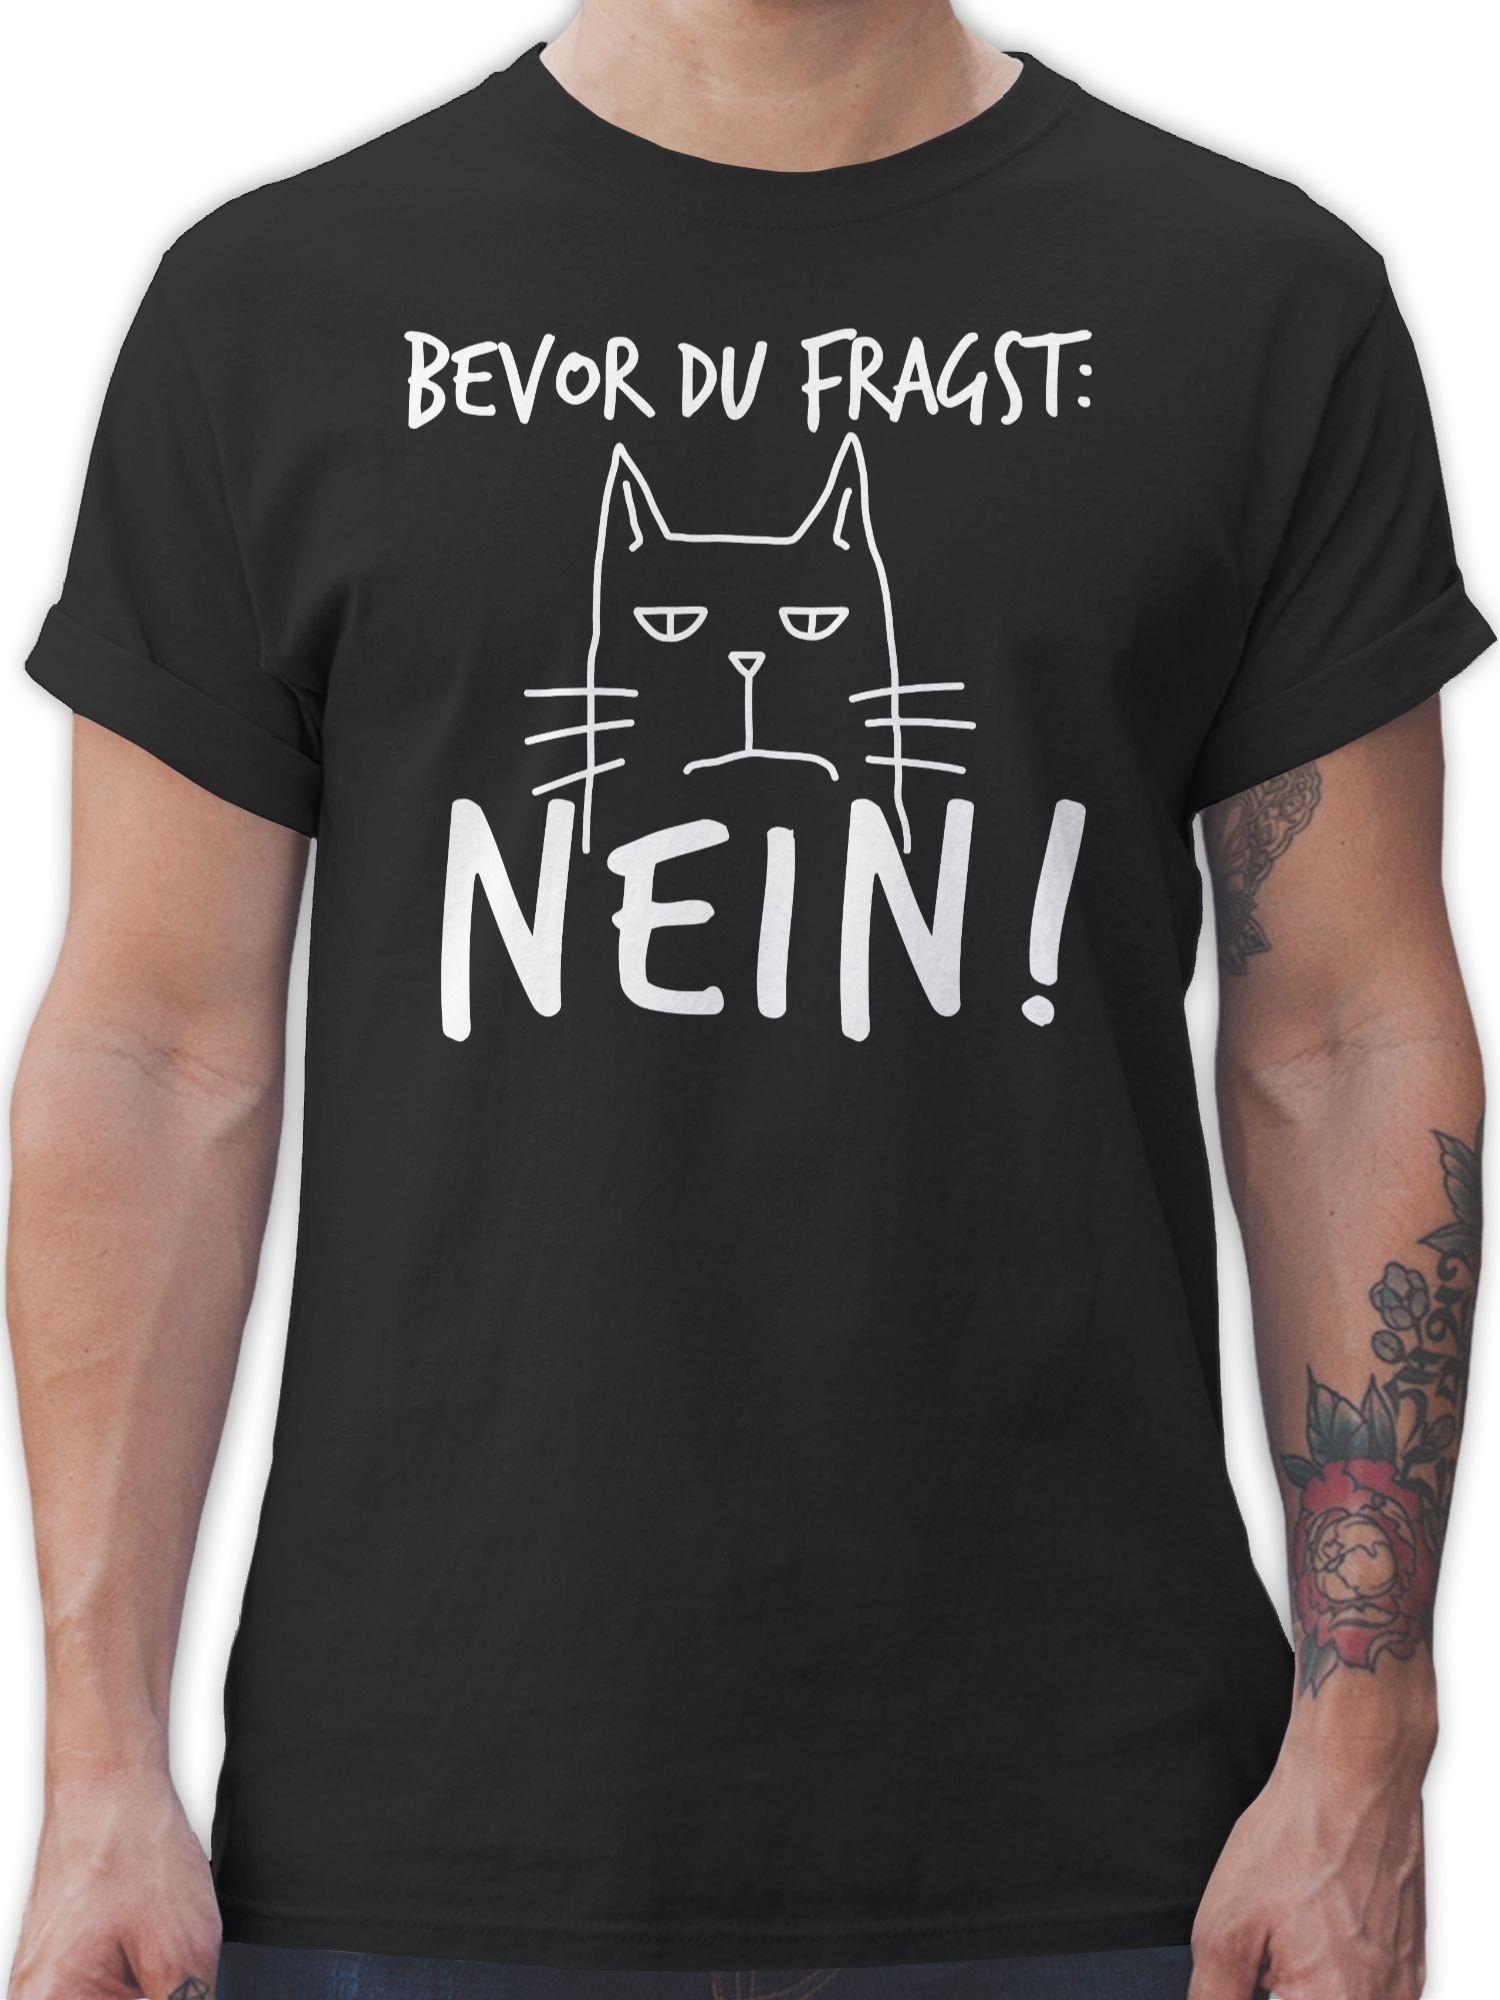 Shirtracer T-Shirt Bevor Weiß Sprüche fragst: mit - Statement Spruch - Katze 02 du Nein! Schwarz